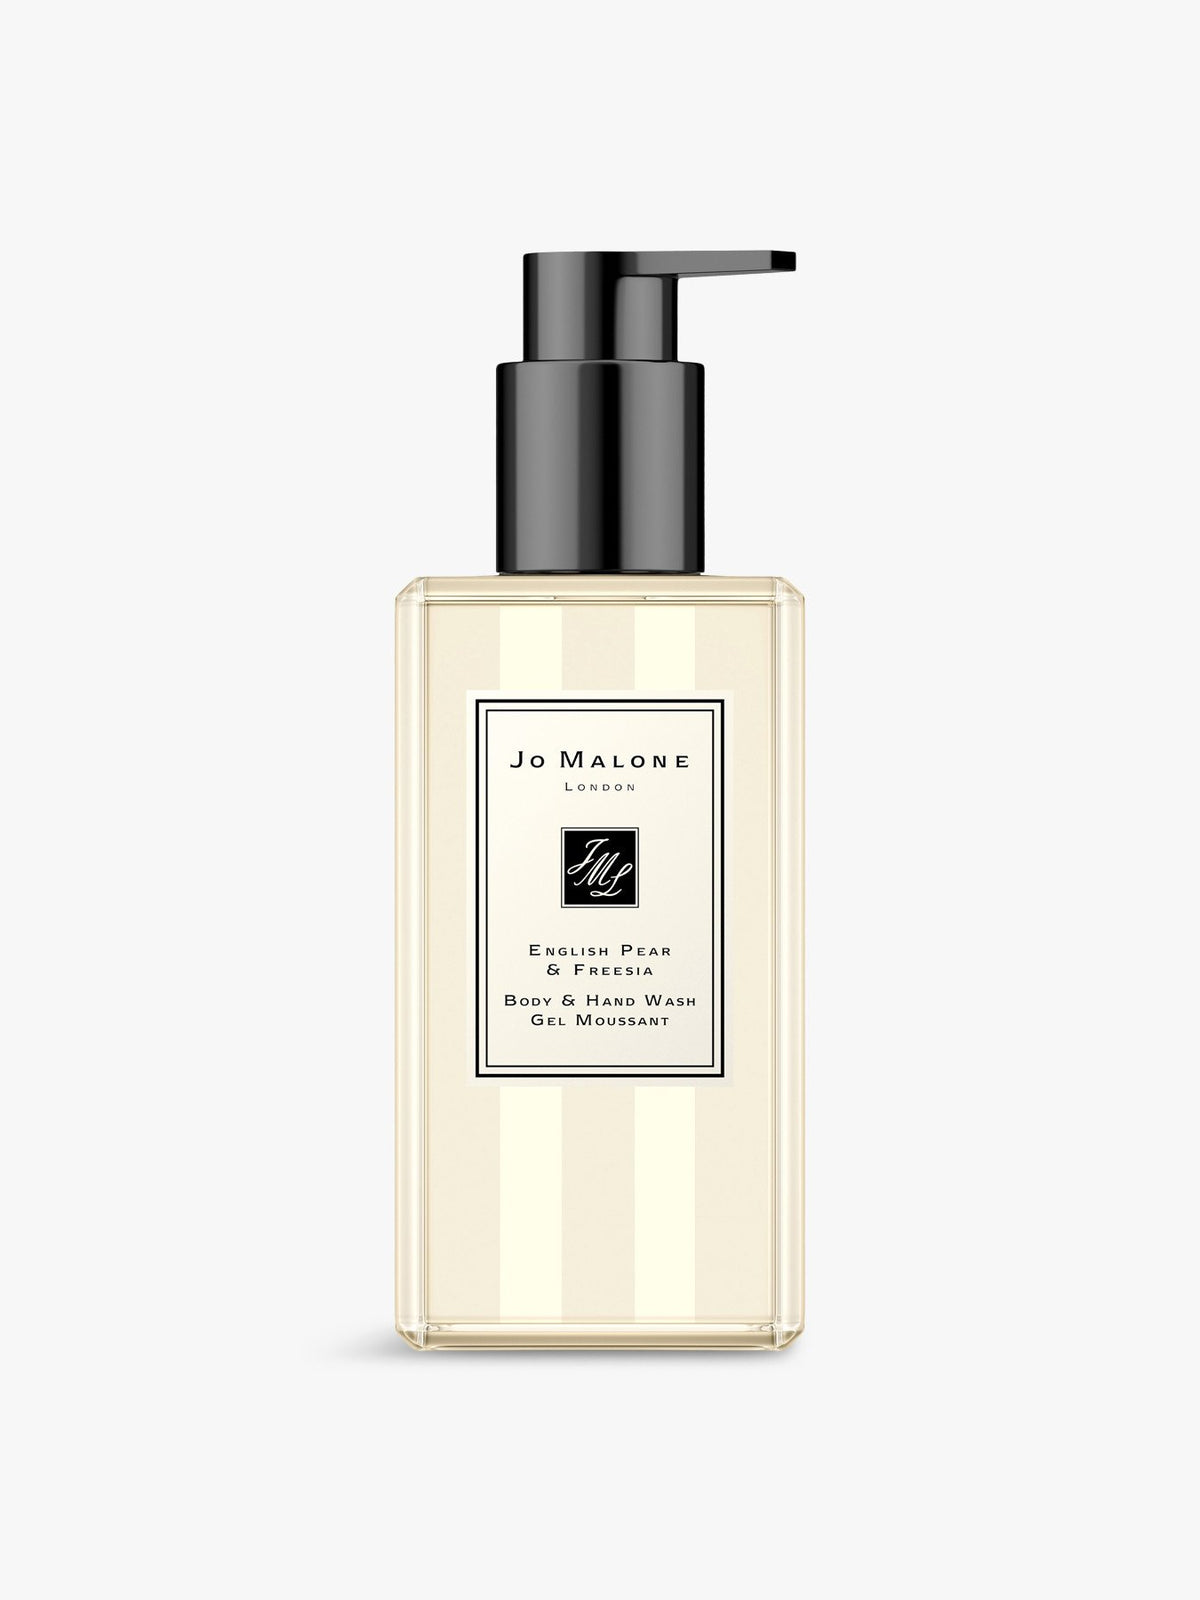 Jo Malone English Pear & Fresia Body & Hand Wash 250ML סבון גוף וידיים 250 מ"ל אינגליש פר ופרזיה - GLAM42